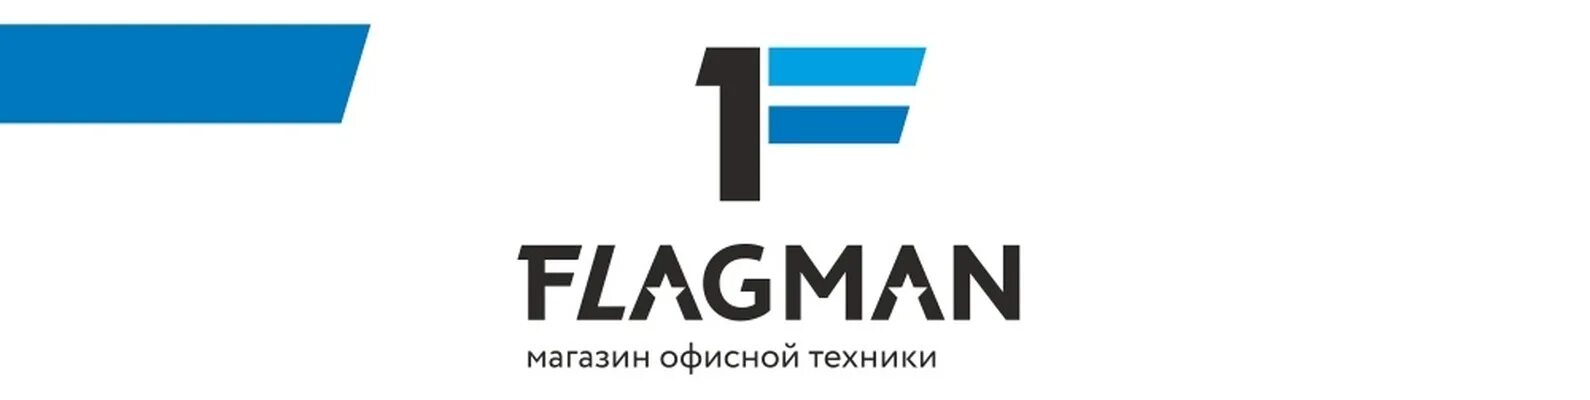 Доступная техника. Flagman logo. Флагман лодки логотип. Логотип магазина флагман. Флагман логотип рыбалка.